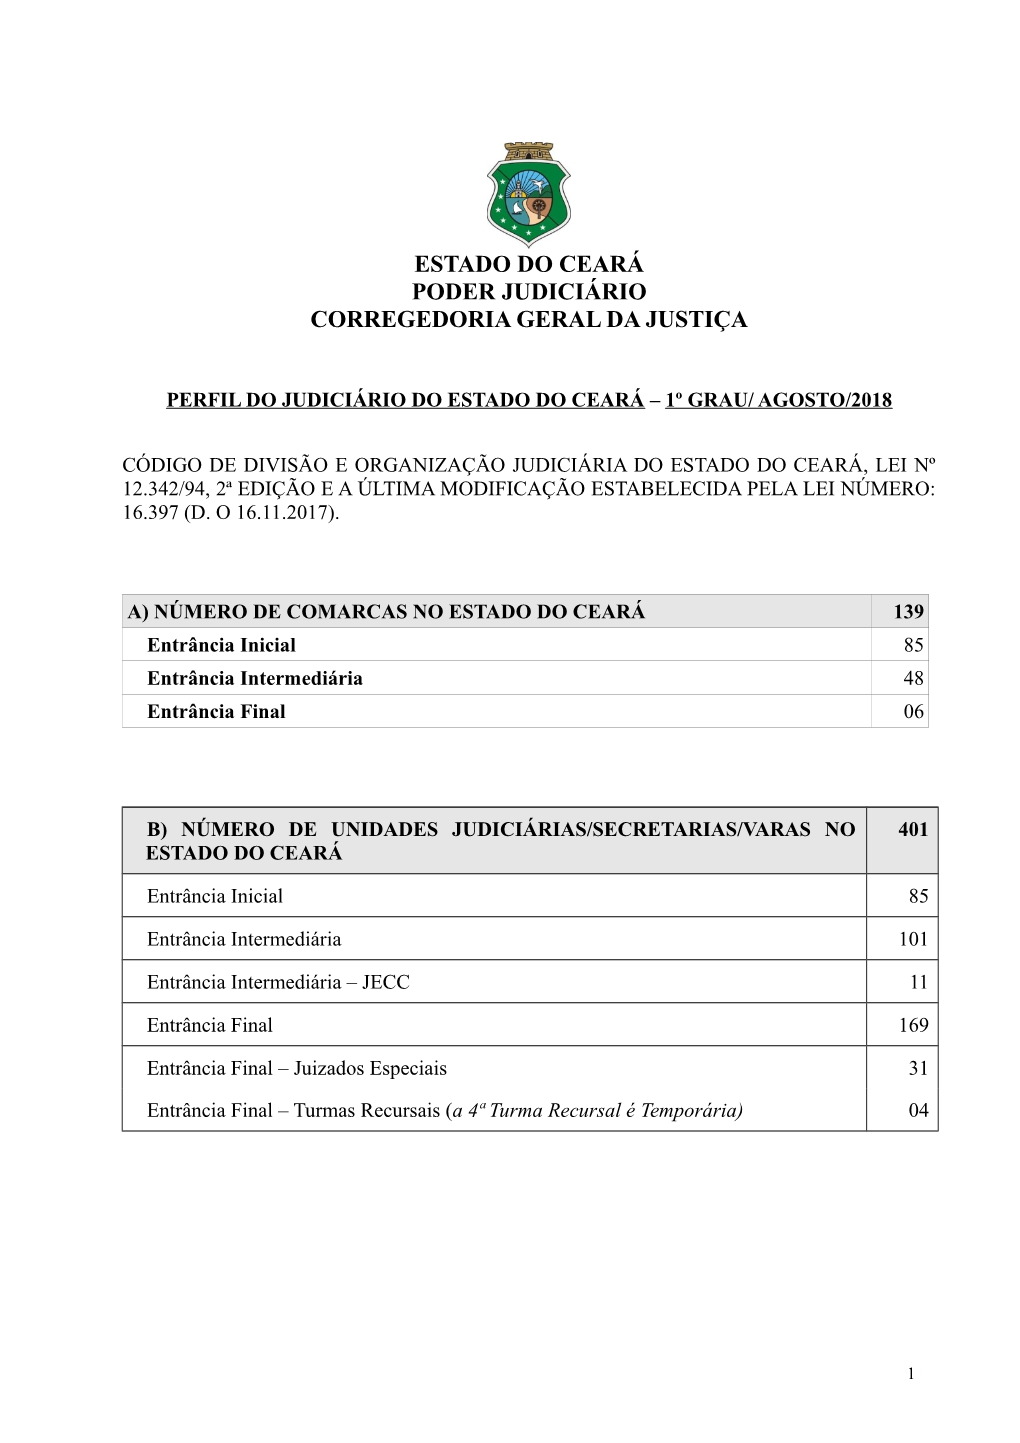 Perfil Do Judiciário Do Ceará/1º Grau – Agosto/2018